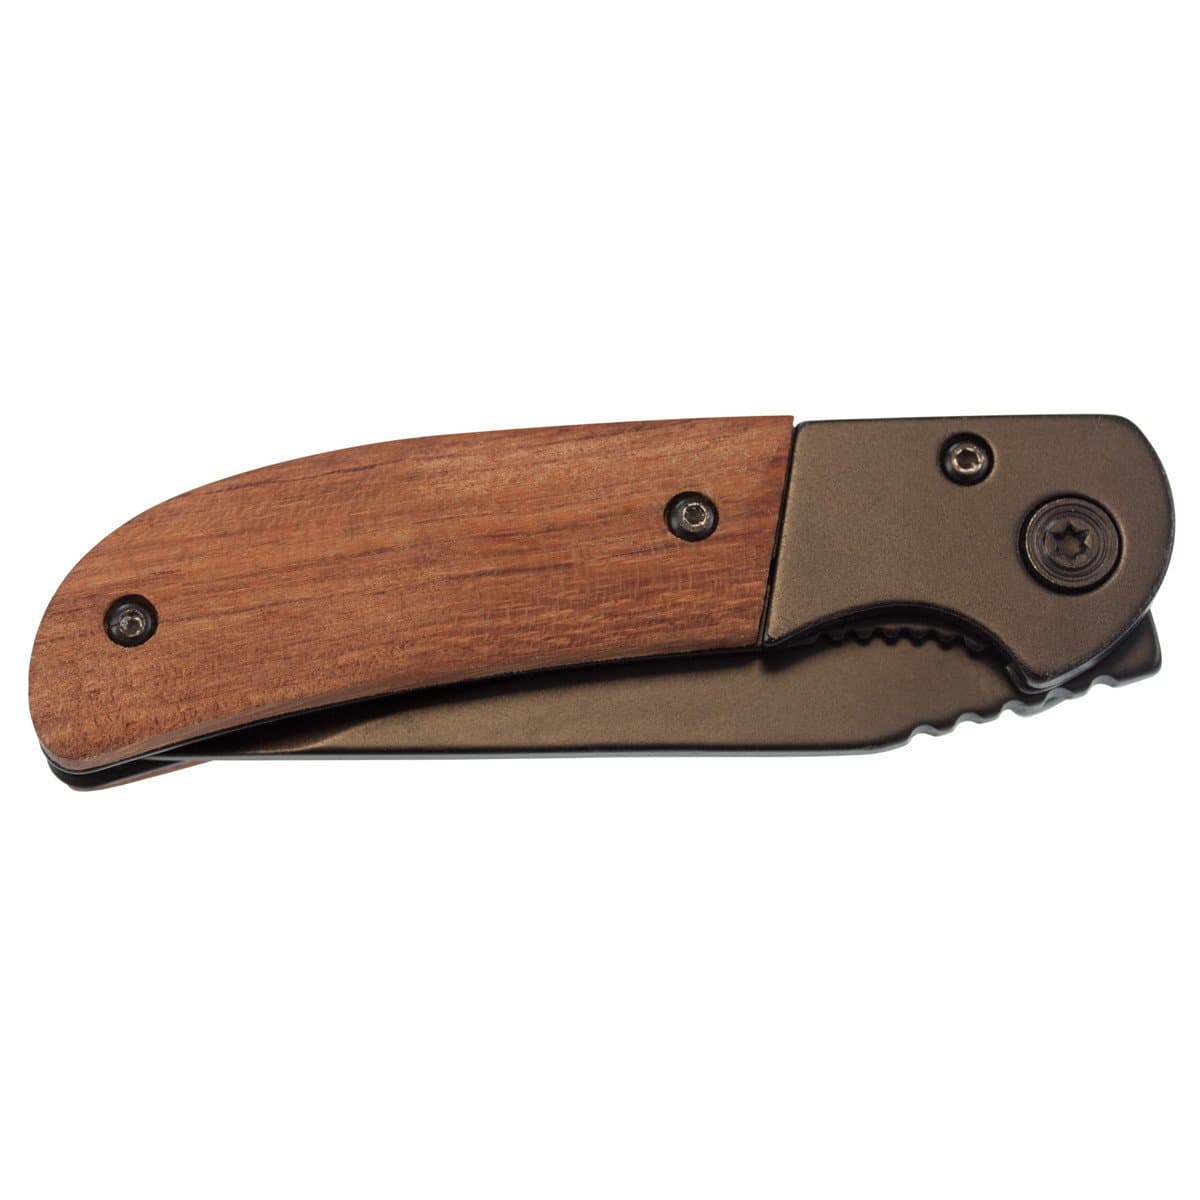 Messer von MetMaxx - Holz mit Gravur